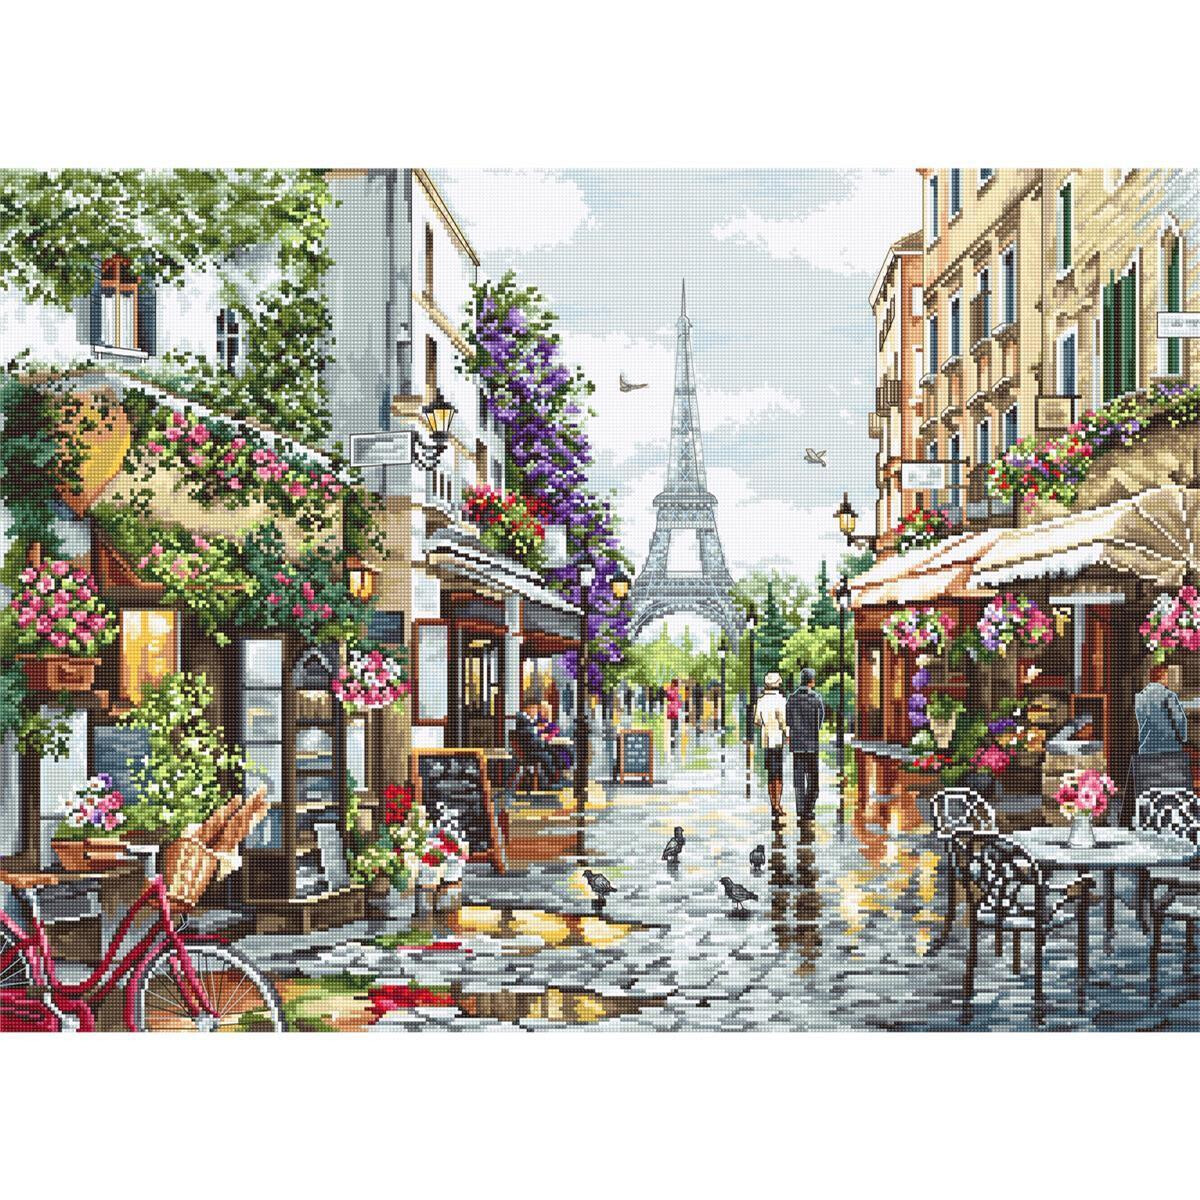 Une rue animée de Paris offre des cafés,...